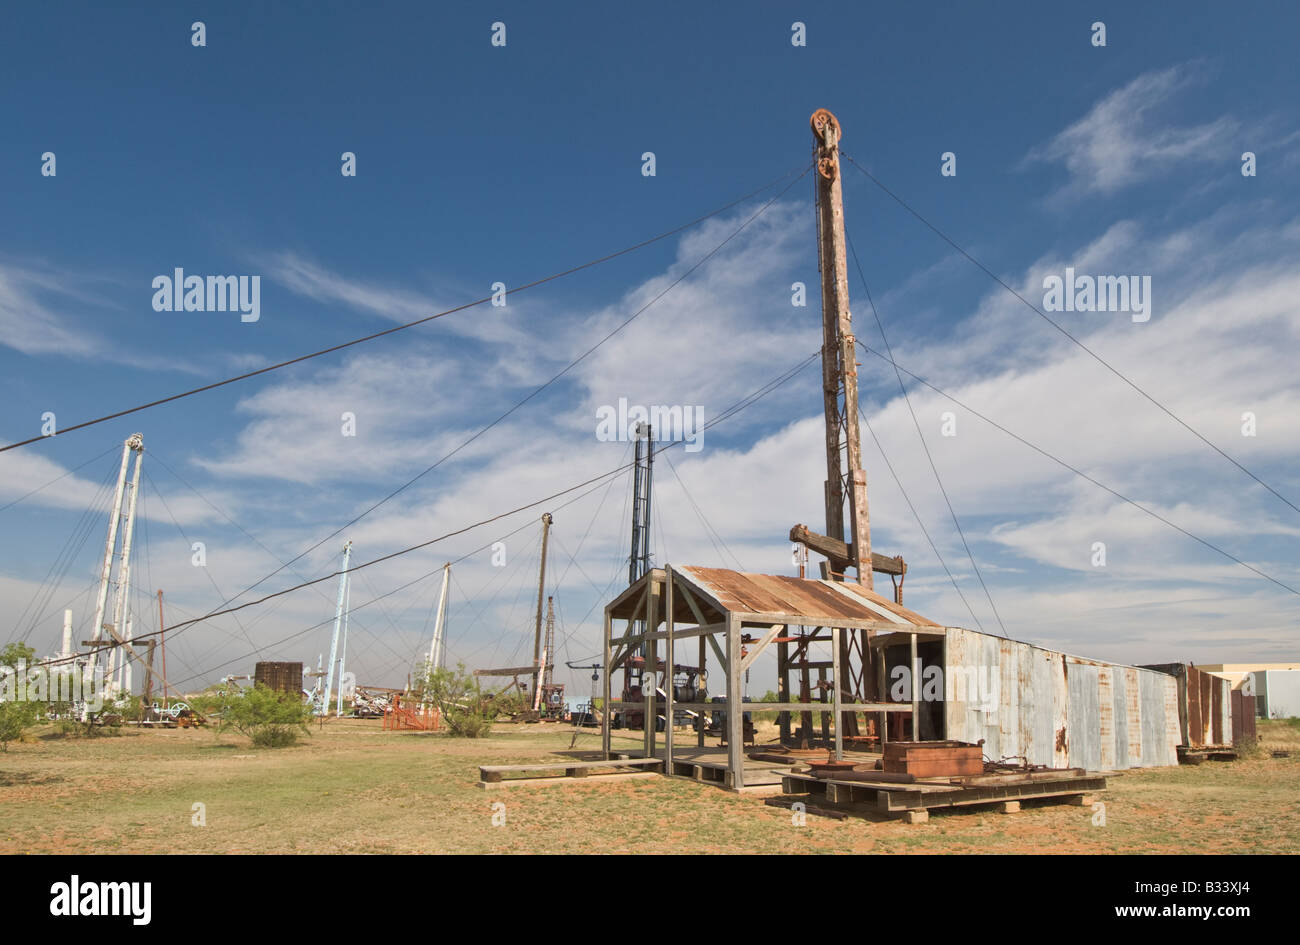 Midland Texas bassin permien antique Musée du pétrole oil drilling rig Banque D'Images